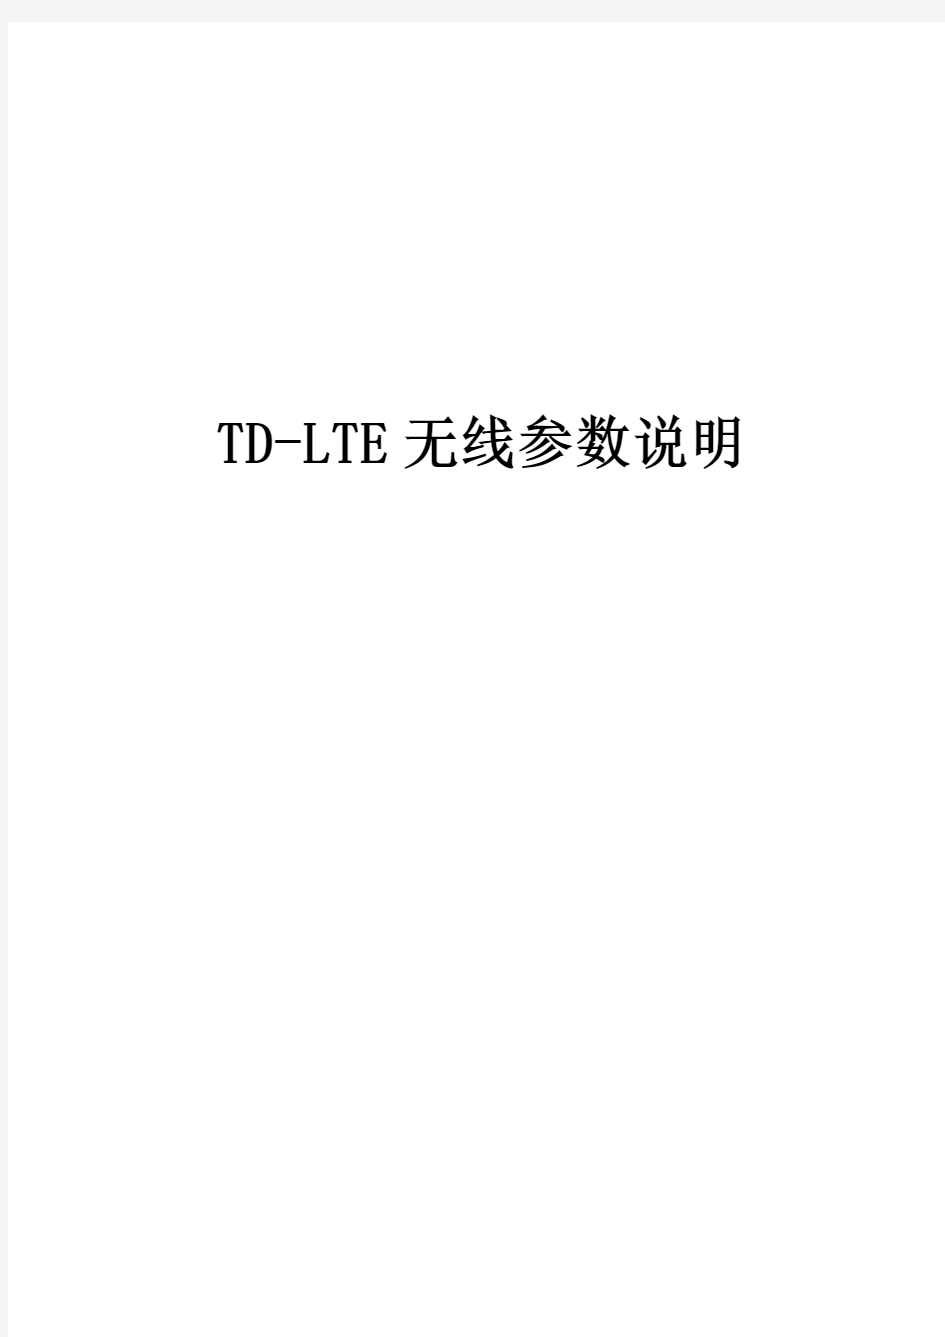 大唐LTE无线参数说明手册